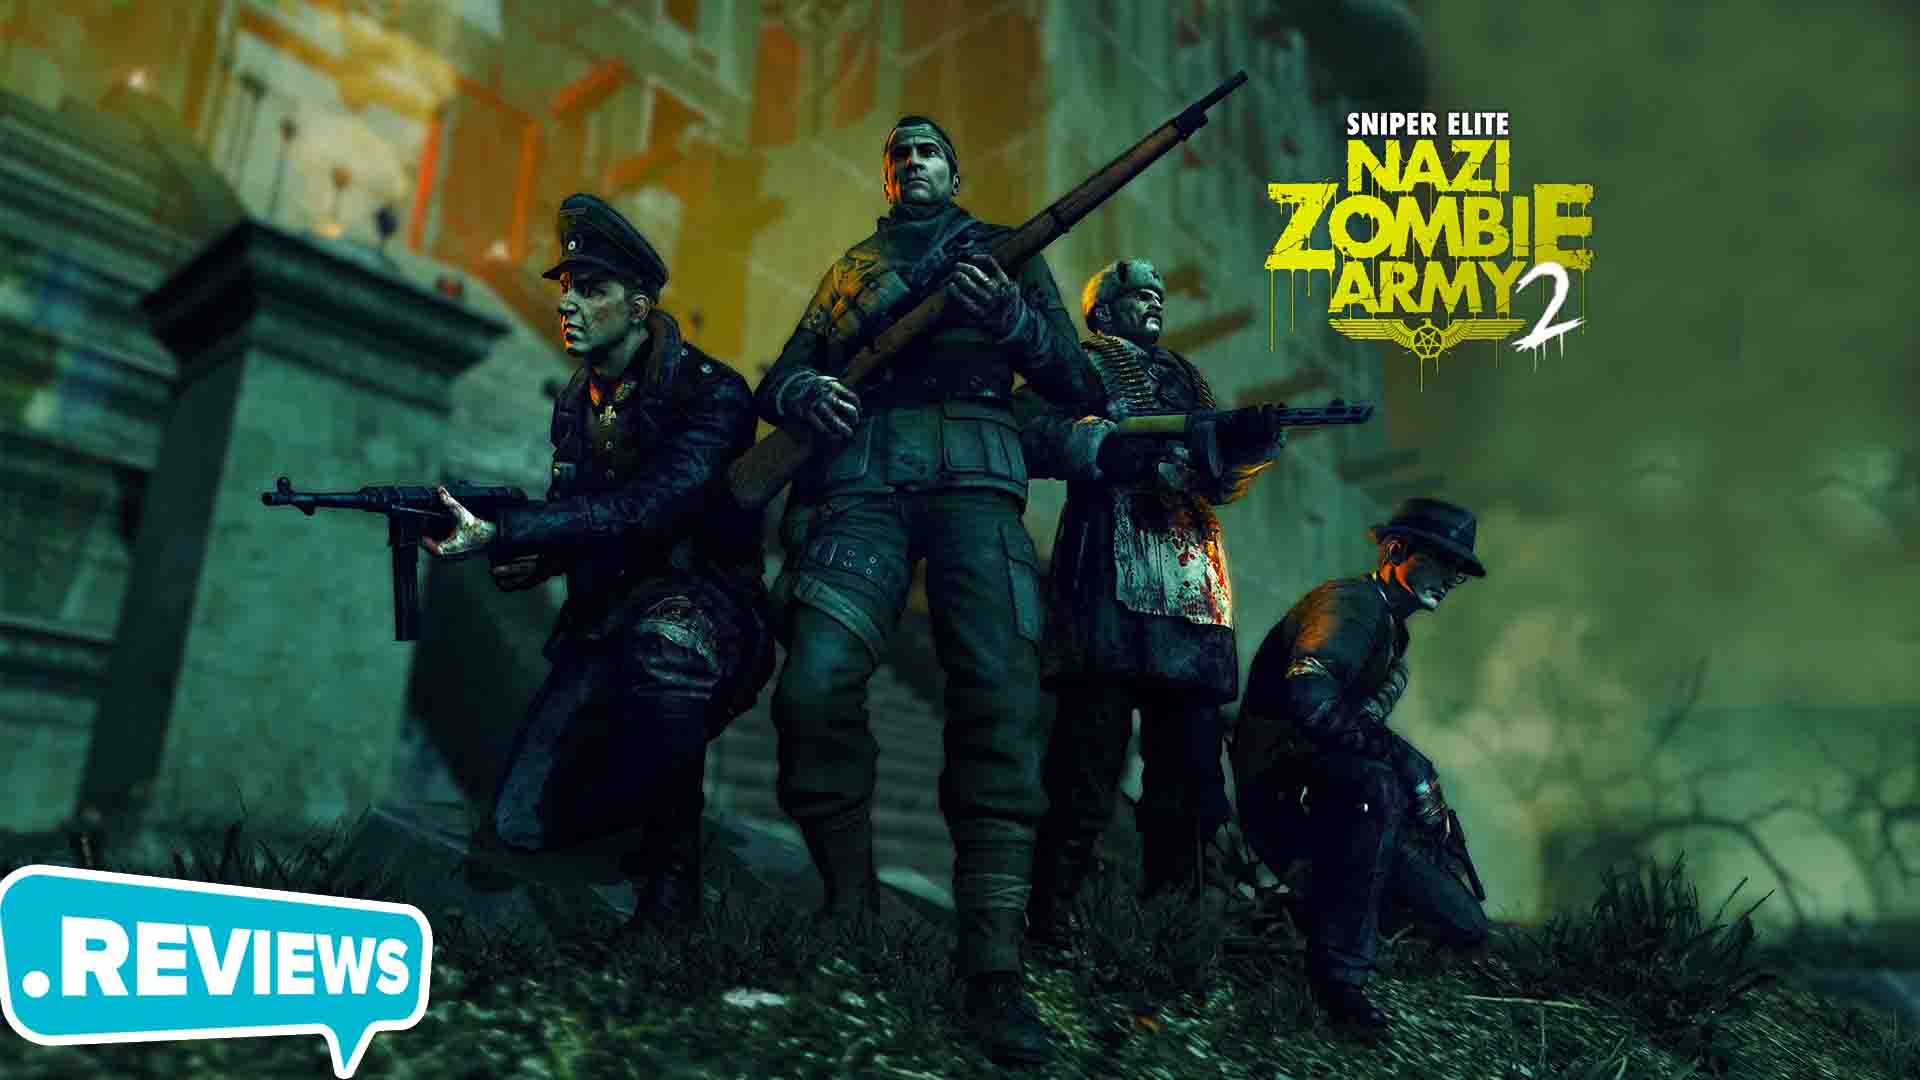 Hướng dẫn tải và cài đặt Sniper Elite Nazi Zombie Army thành công 100%